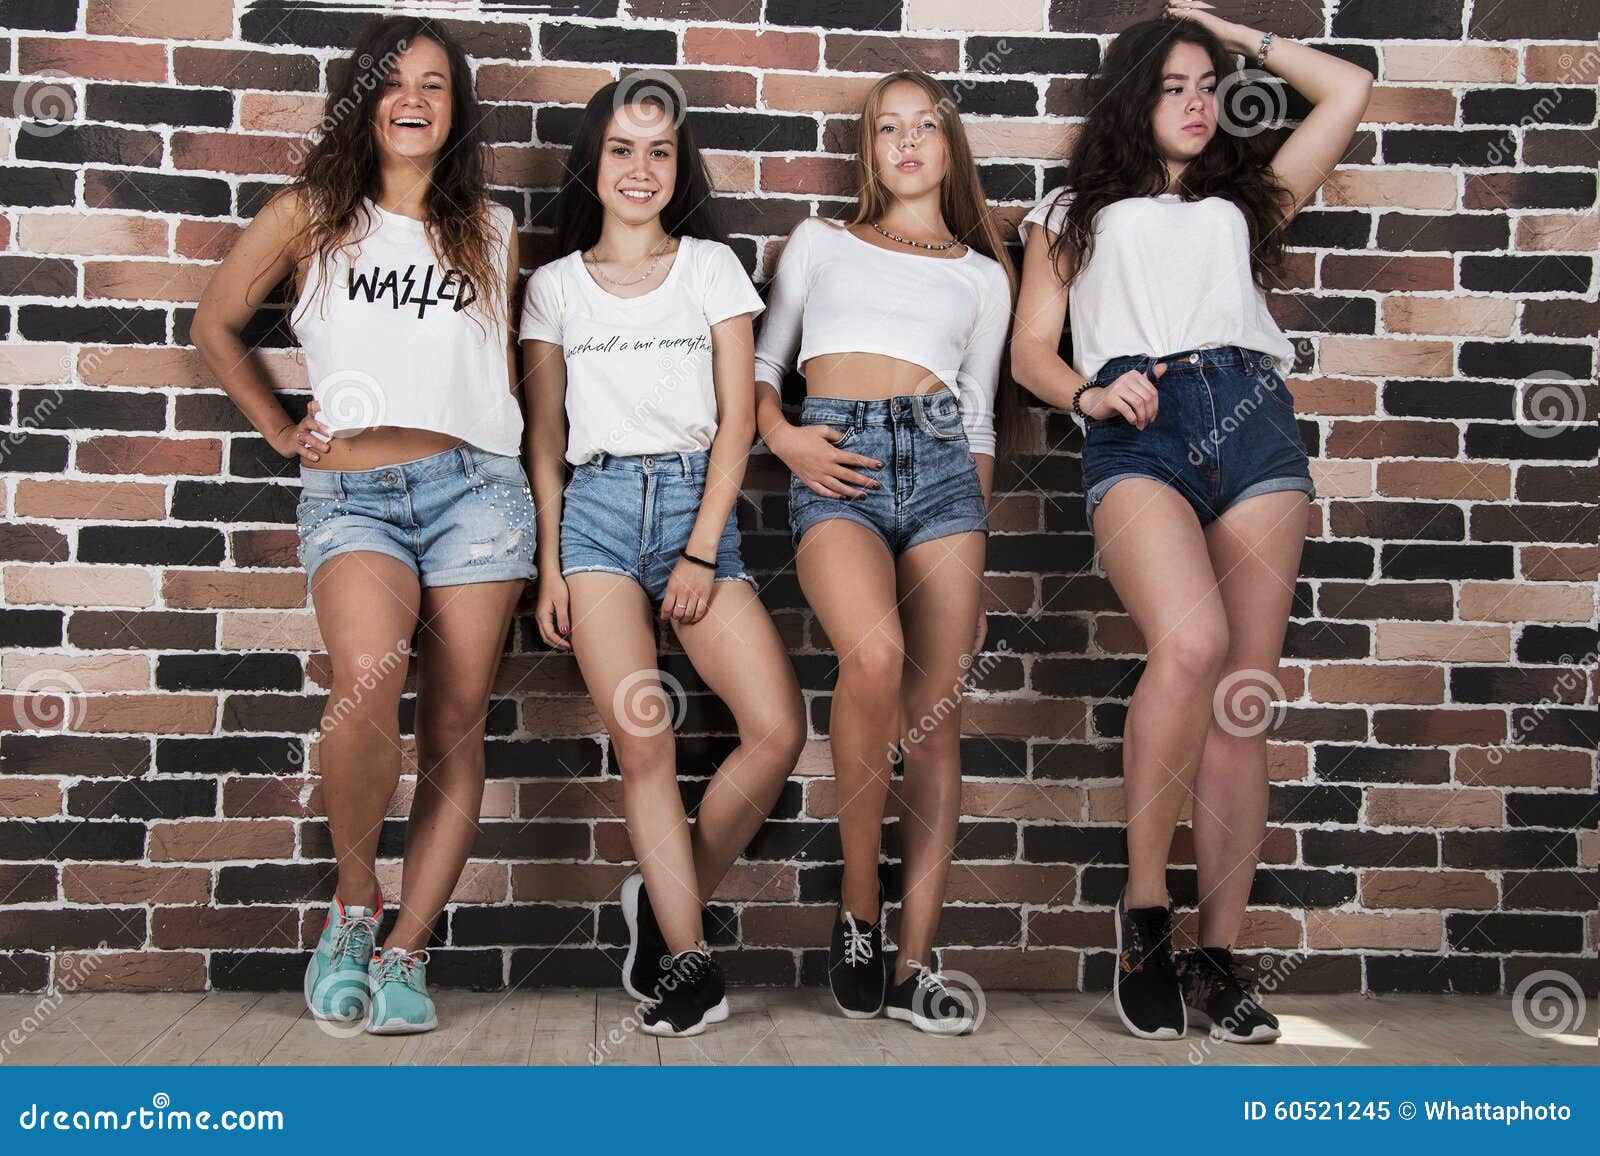 Short video girls. Группа девушек в шортах. Группа девочек в шортах. Группа девушек в джинсовых шортах. Молодые девушки в шортах группа.